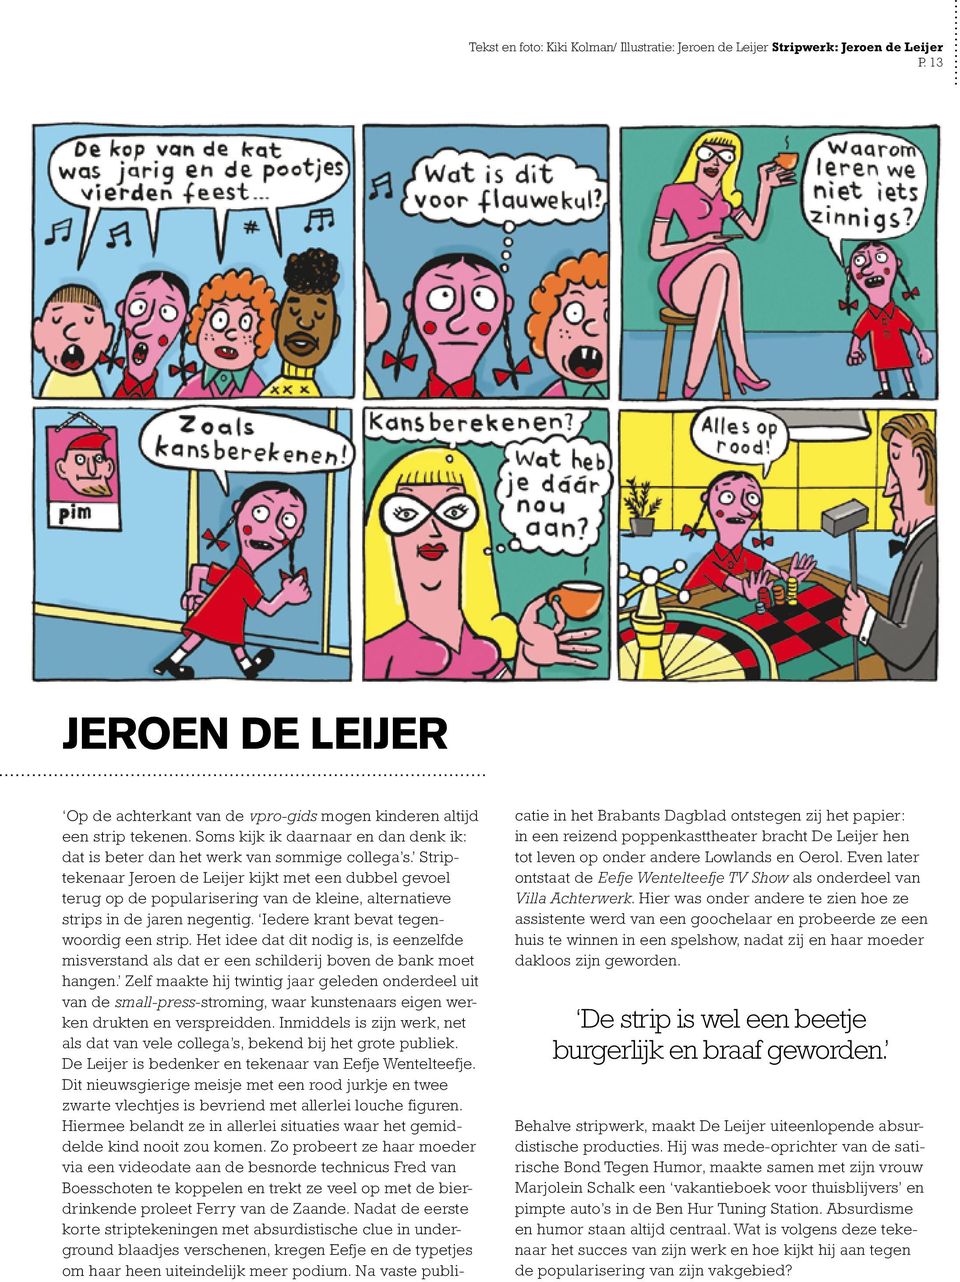 Striptekenaar Jeroen de Leijer kijkt met een dubbel gevoel terug op de popularisering van de kleine, alternatieve strips in de jaren negentig. Iedere krant bevat tegenwoordig een strip.